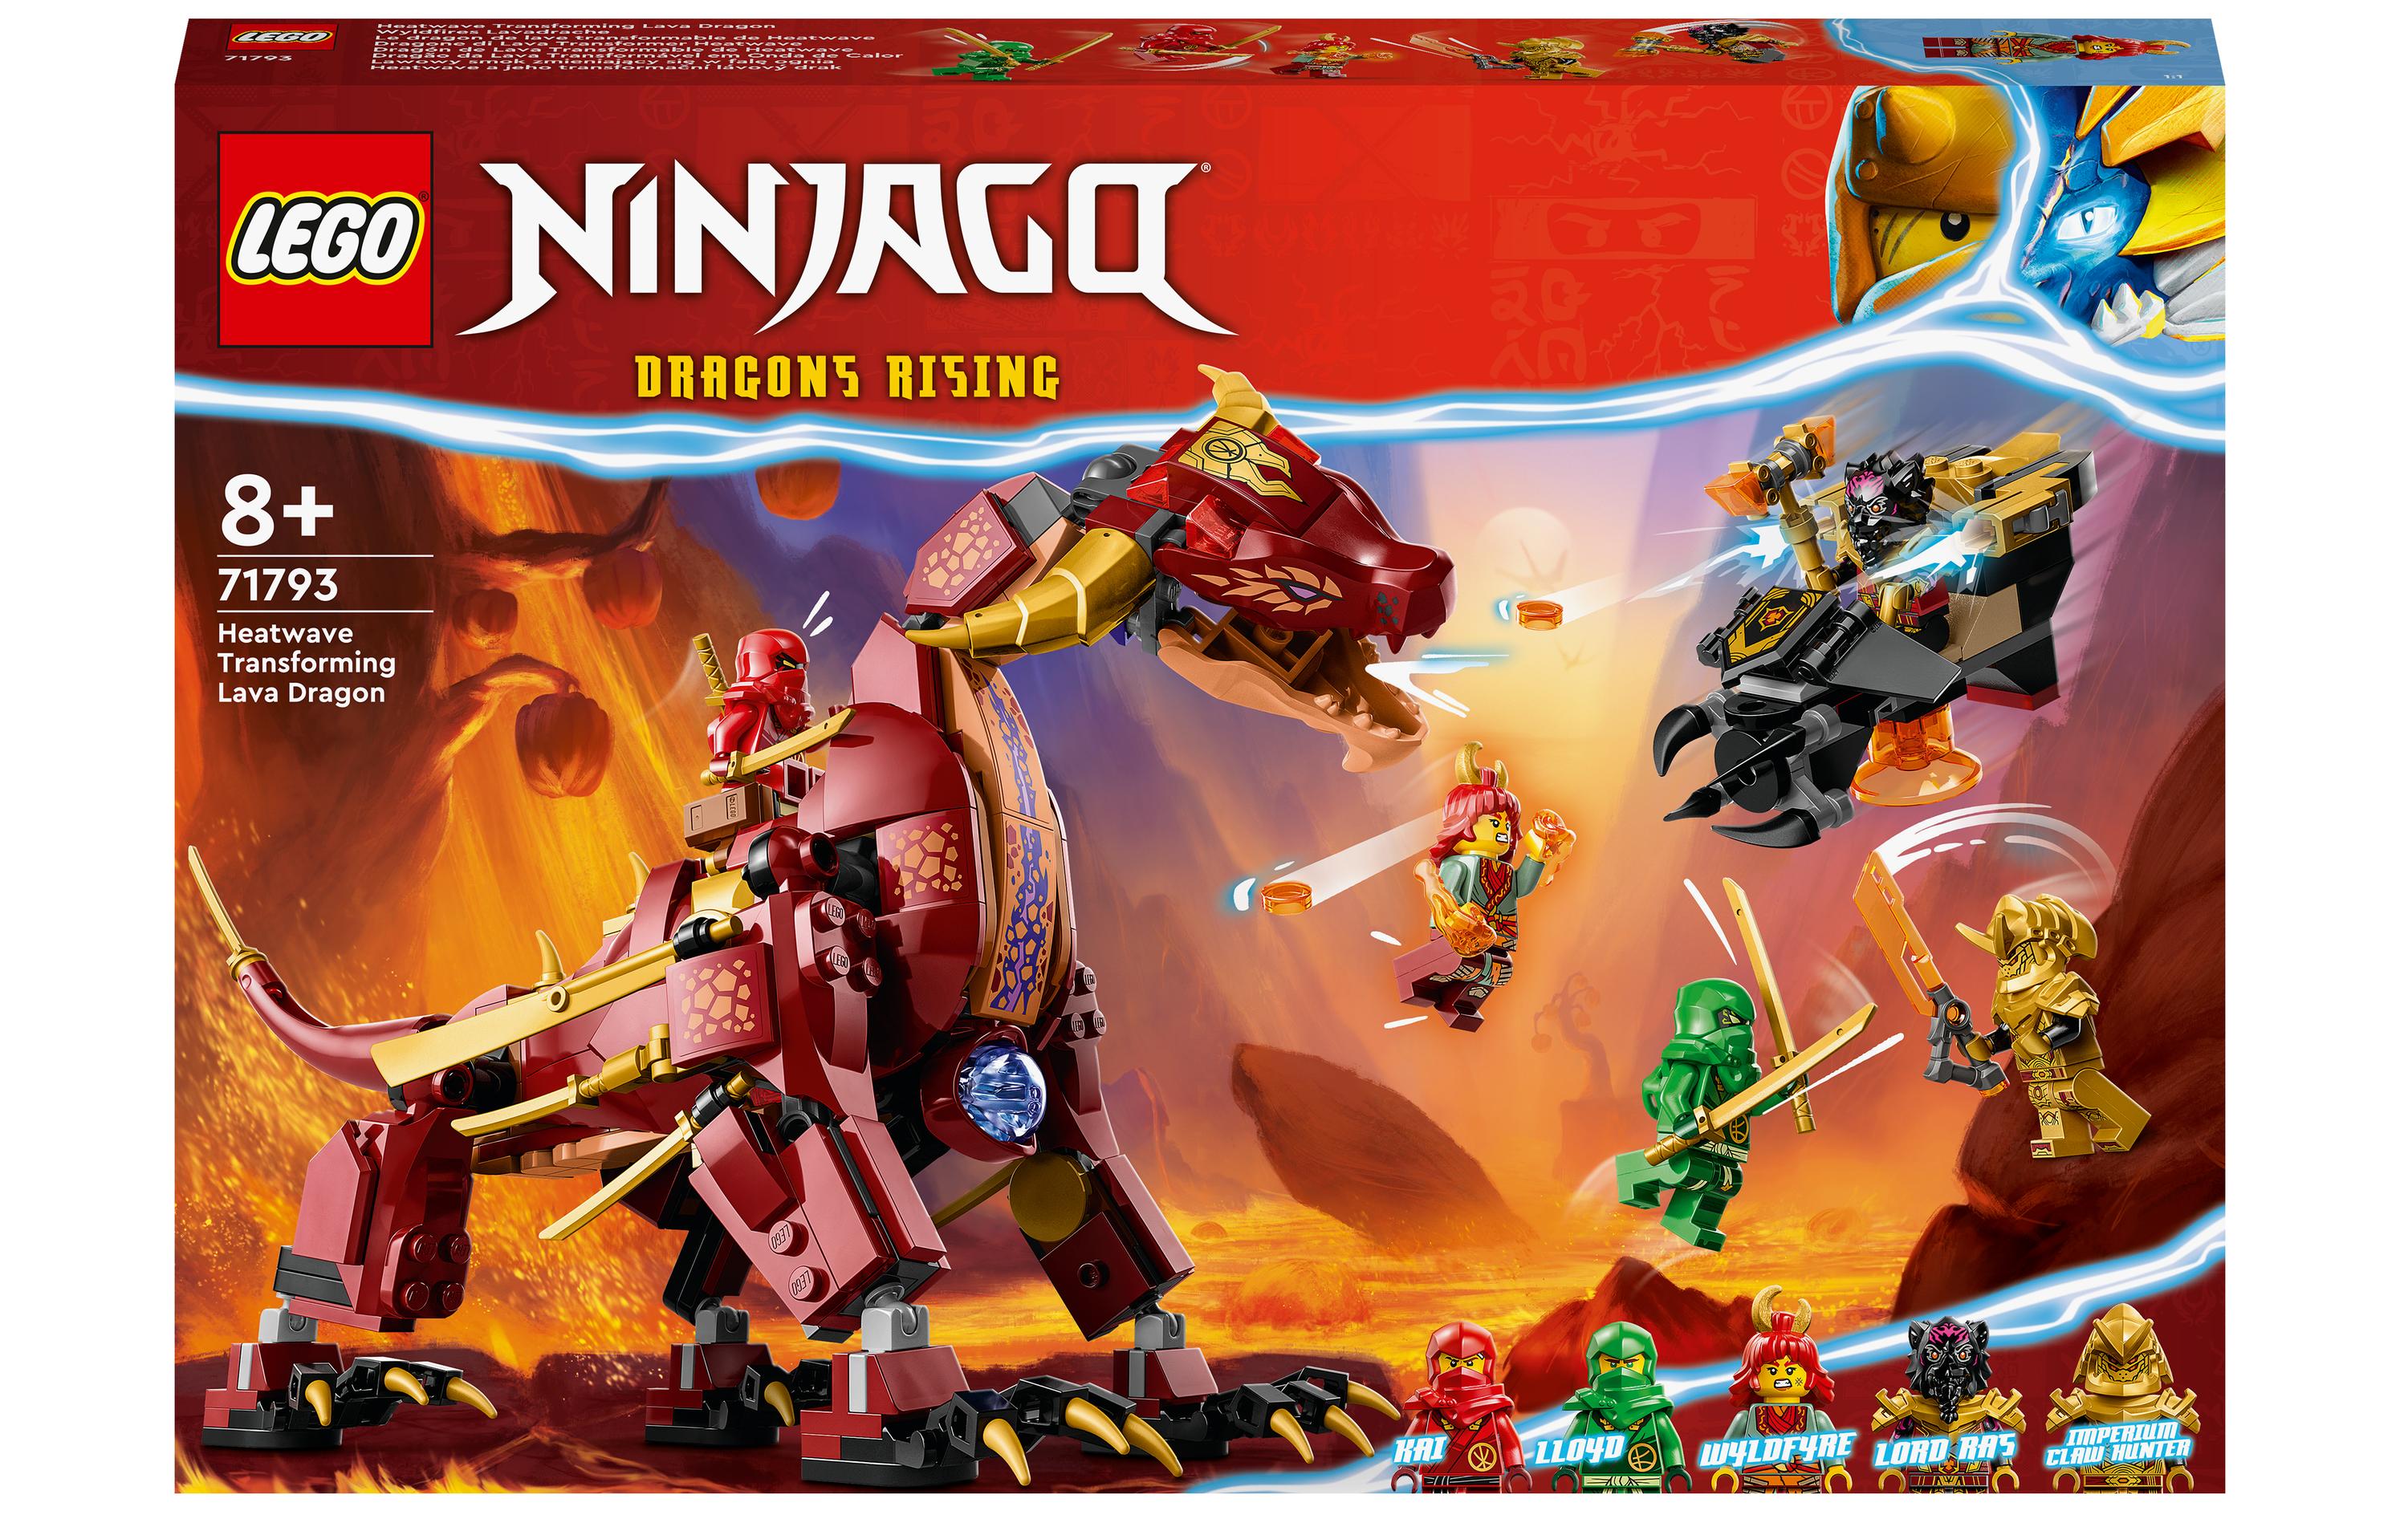 LEGO® Ninjago Wyldfyres Lavadrache 71793 - im GOLDSTIEN.SHOP verfügbar mit Gratisversand ab Schweizer Lager! (5702017416540)